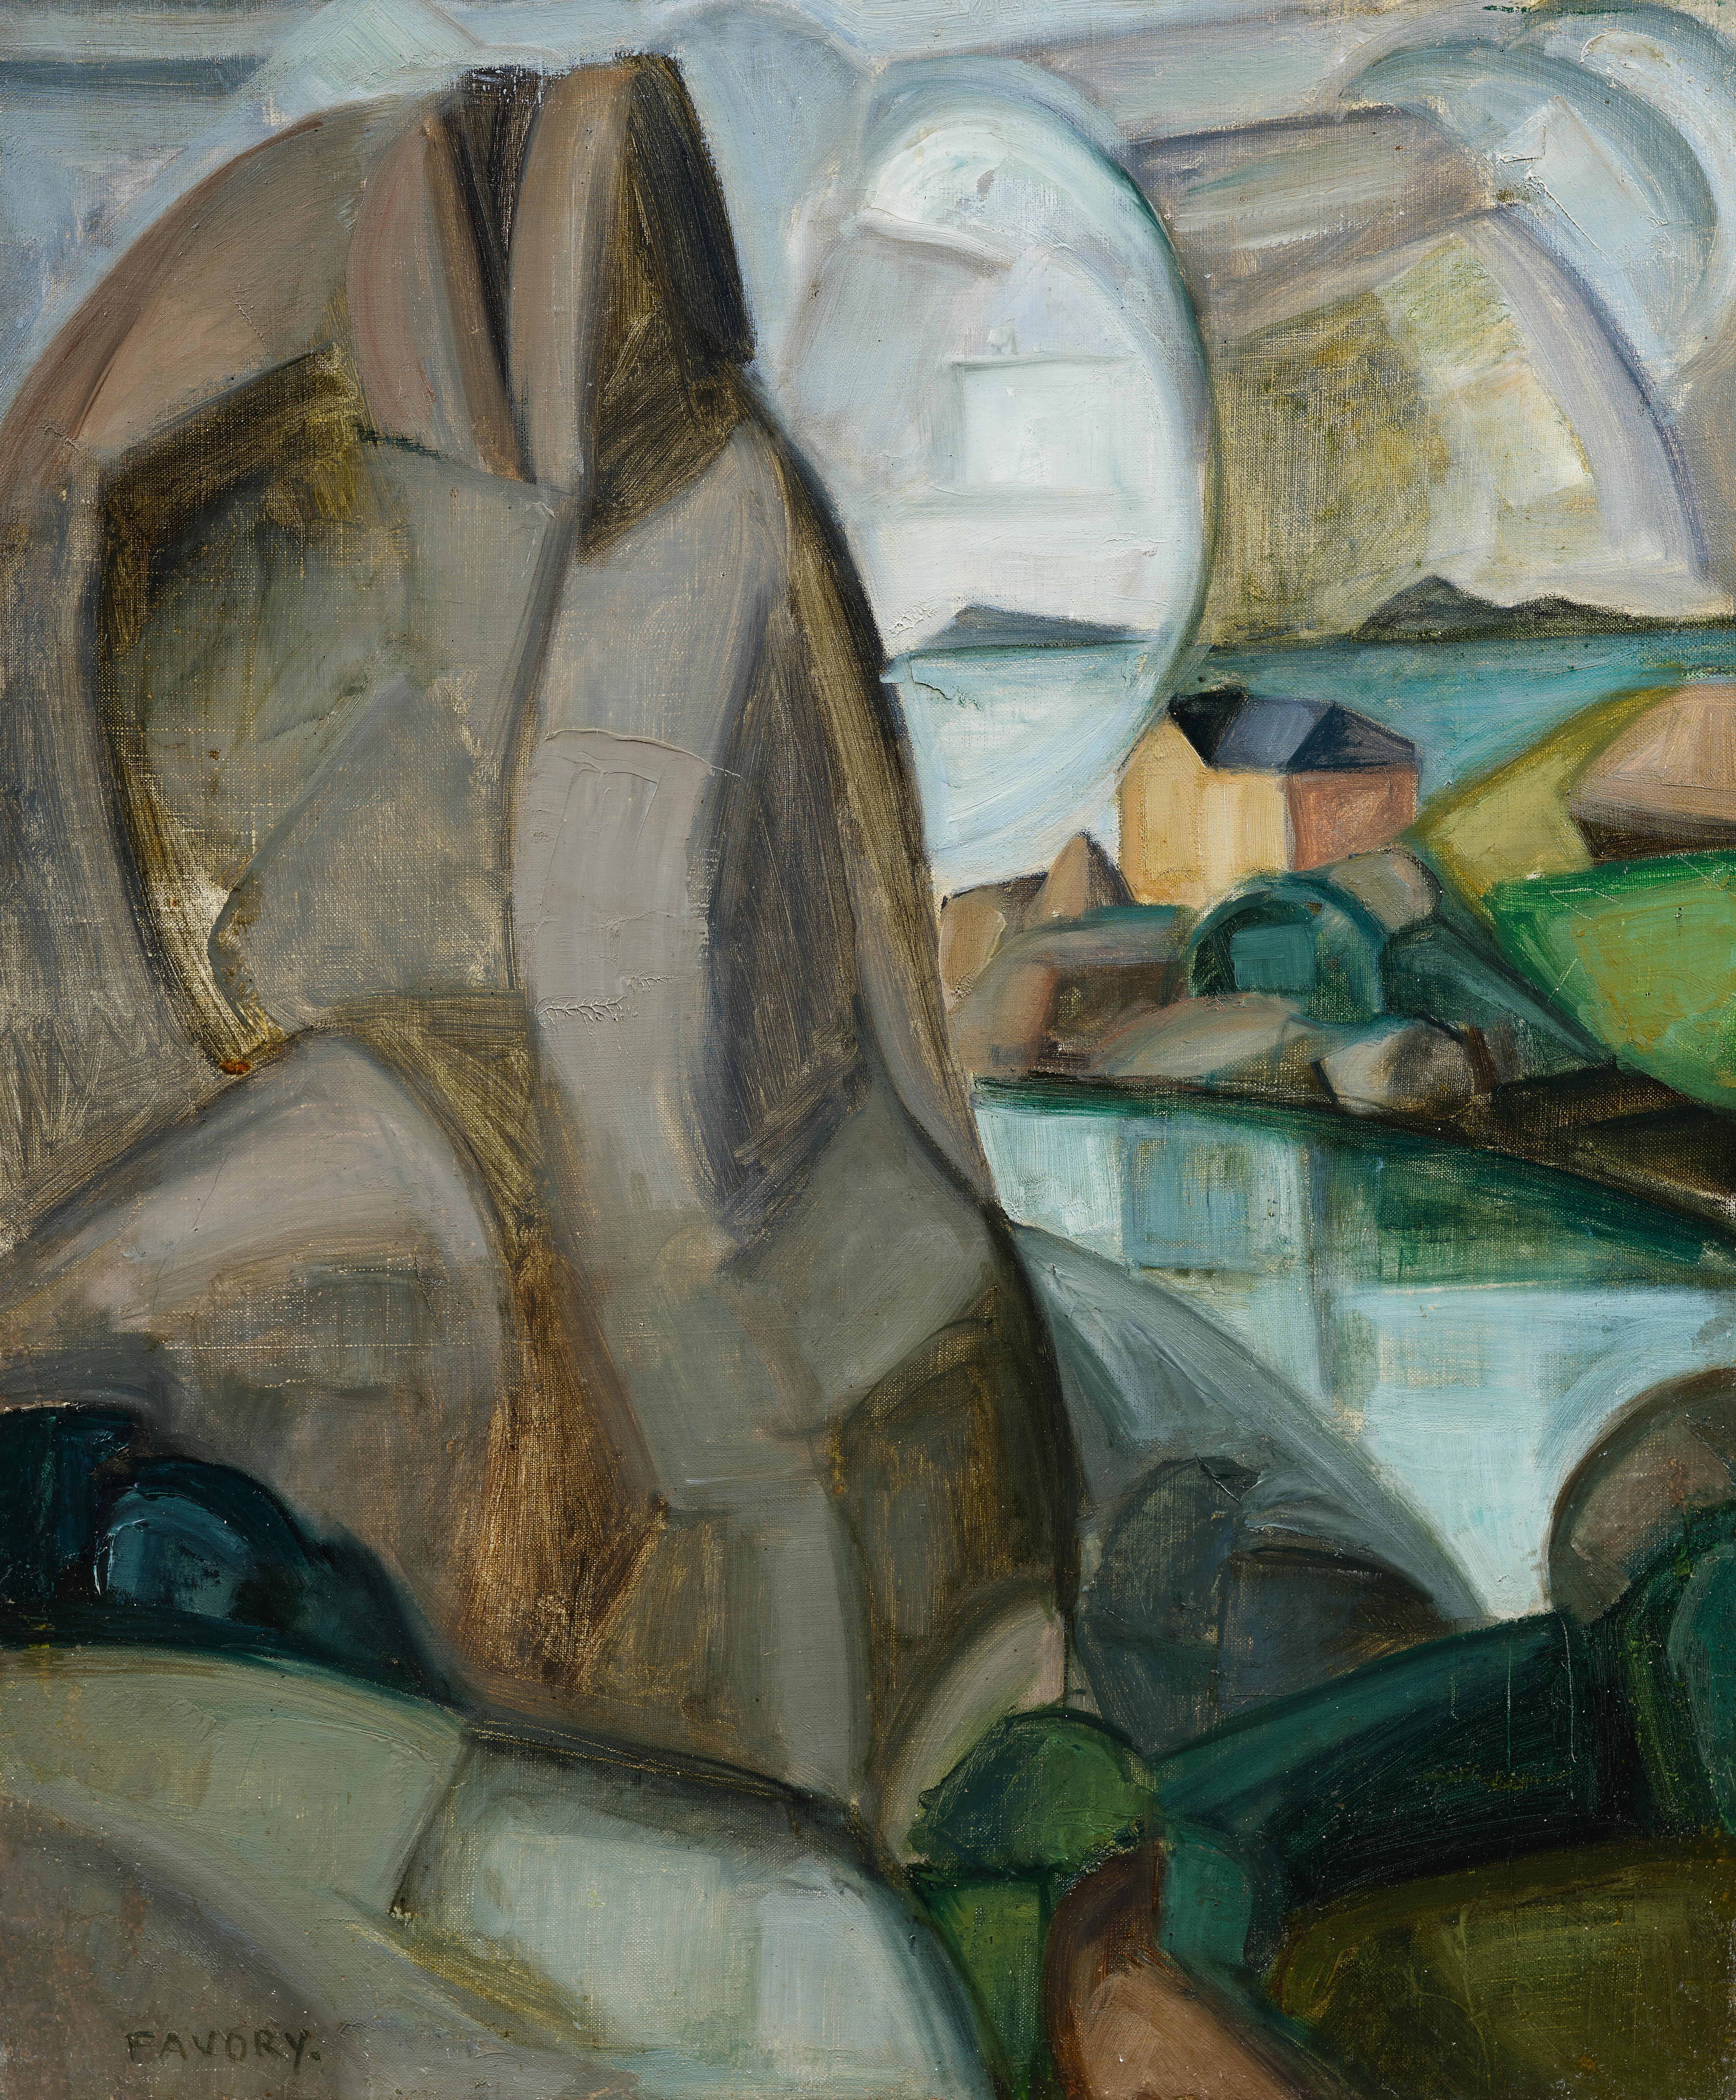 Ploumanach, les rochers gris - tableau de André Favory, vendu par la galerie Marek & Sons